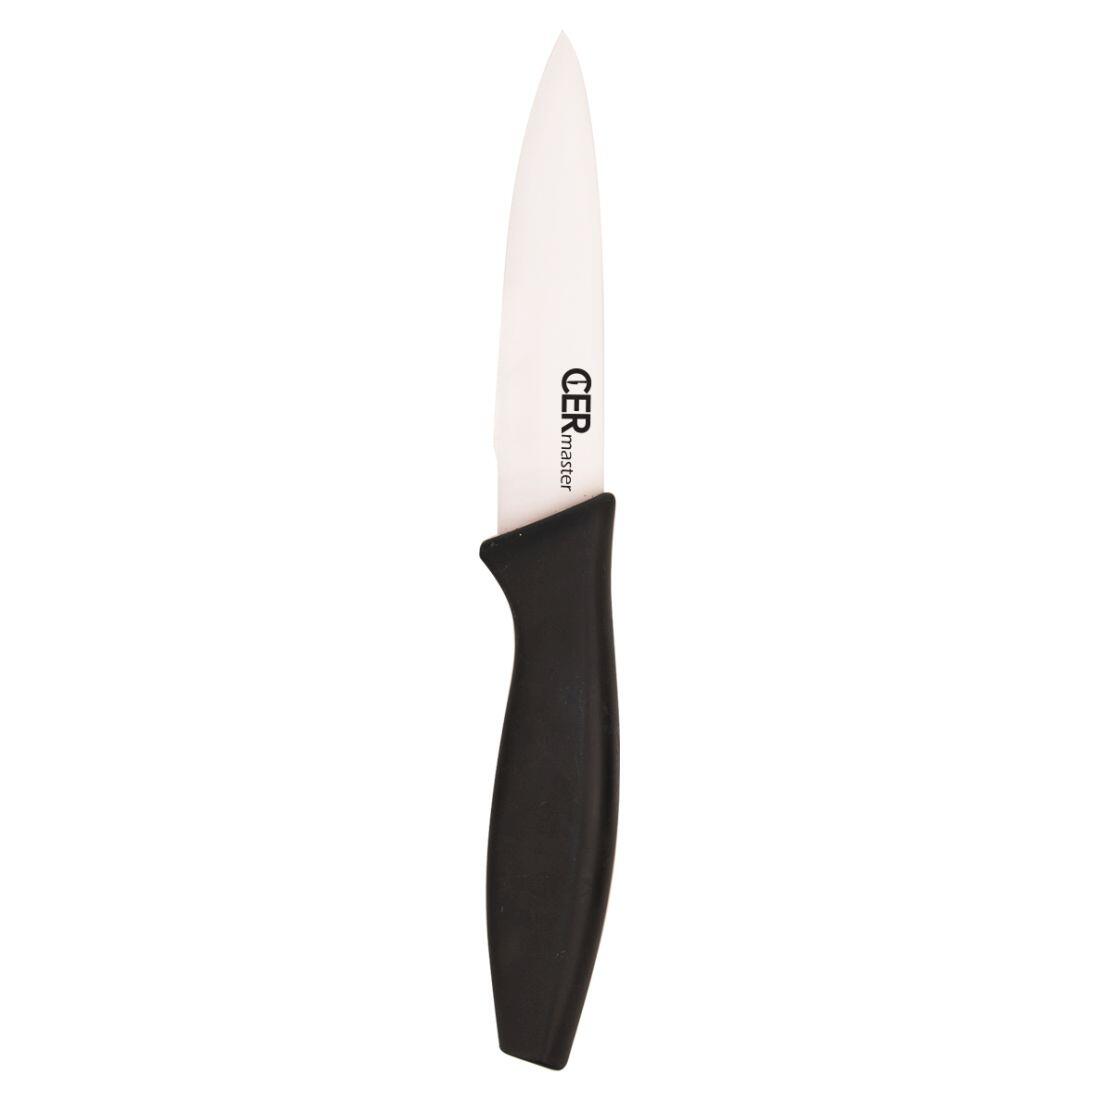 nůž keramický 10cm univerzální CERMASTER 0.05 Kg MAXMIX Sklad14 282161 10